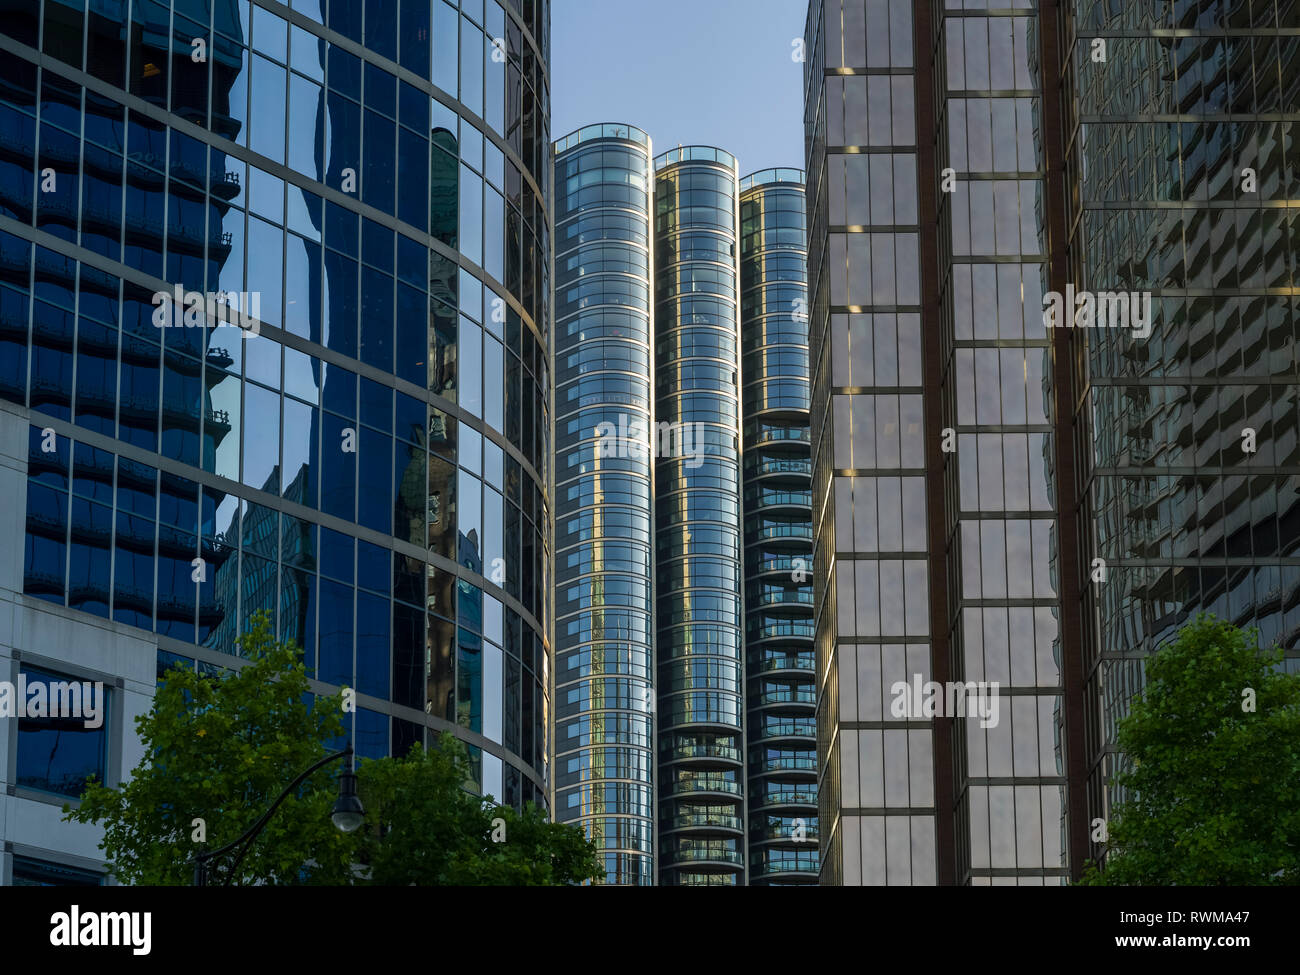 Grattacielo edifici per uffici e condomini con facciata di vetro che riflette il blu del cielo e degli edifici adiacenti; Vancouver, British Columbia, Canada Foto Stock